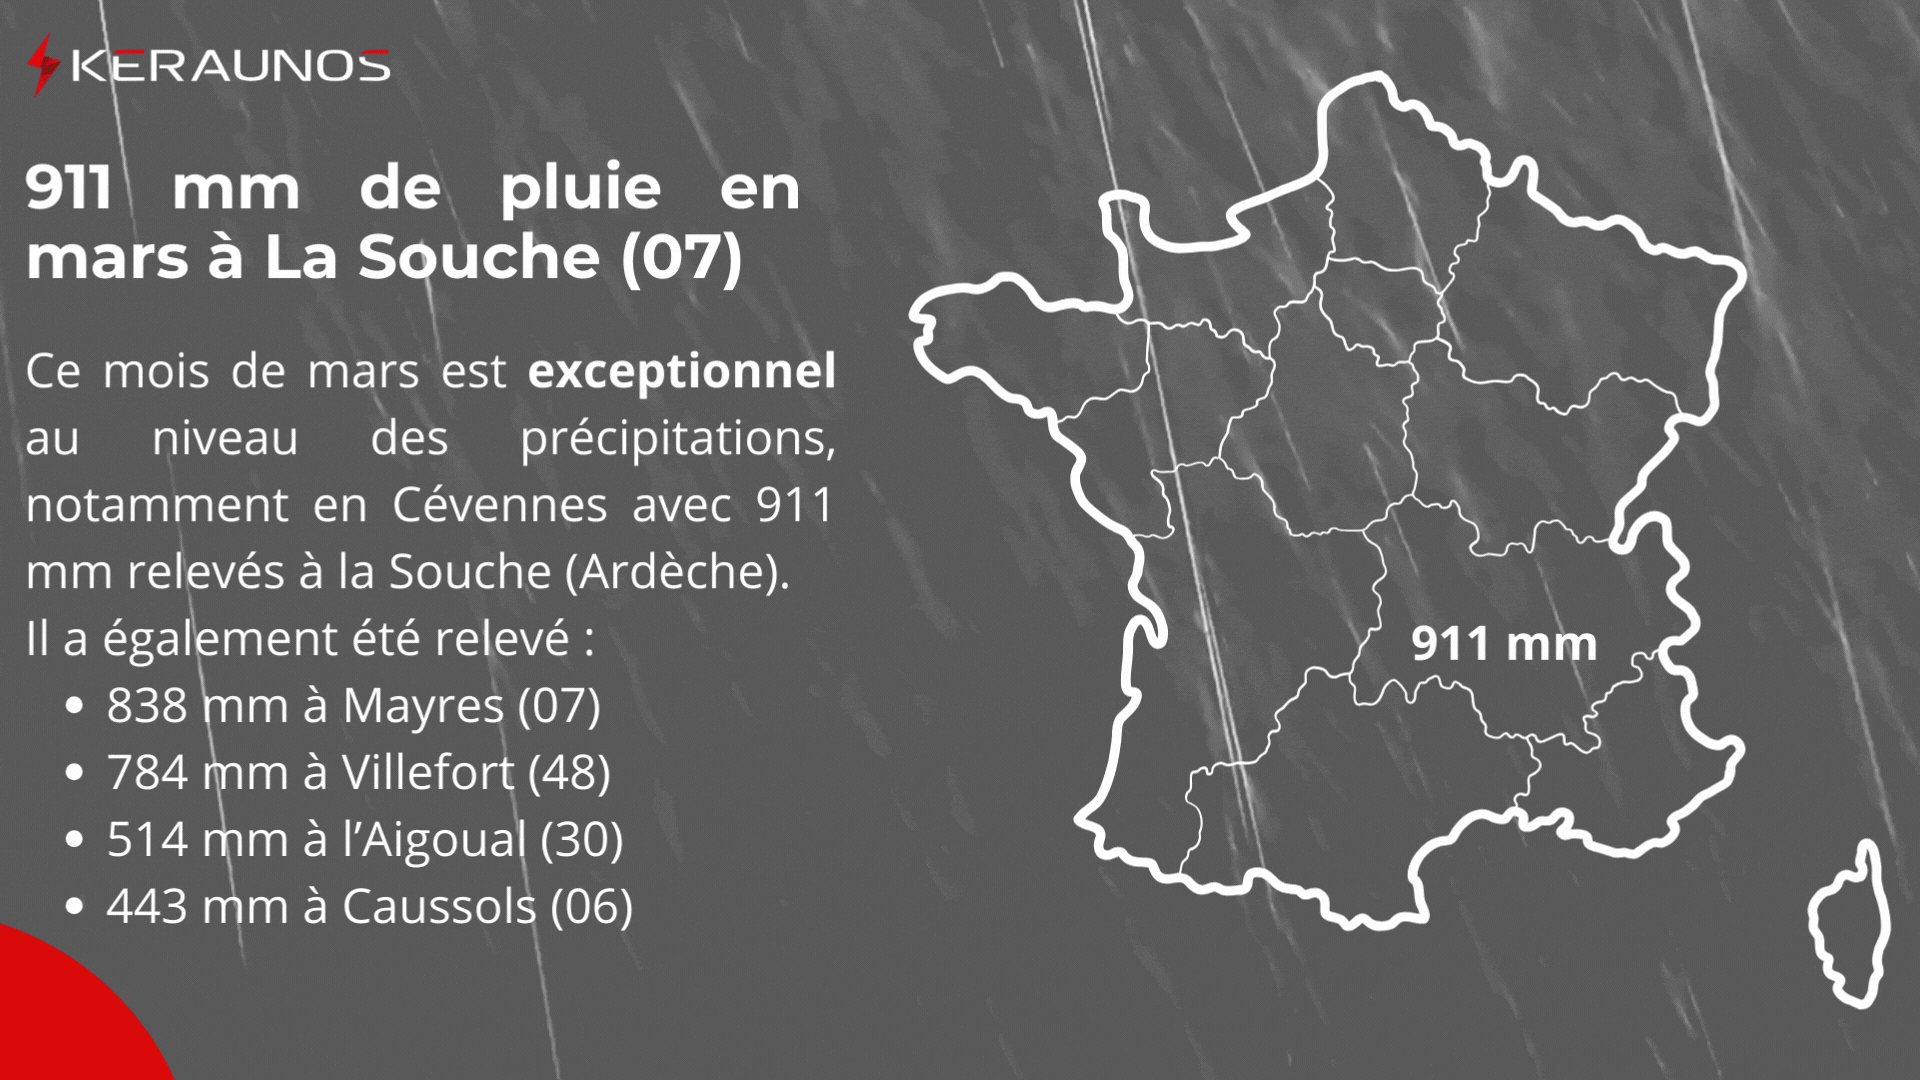 <p>Ce mois de mars a été exceptionnellement pluvieux sur bon nombre de régions, parfois avec des excédents de près de 500%. Dans les Cévennes, des cumuls allant jusqu'à plus de 900 mm ont été relevés en Ardèche. Il s'agit de valeurs que l'on peut davantage rencontrer en automne, lorsque les épisodes méditerranéens/cévenols sont très actifs et se succèdent.</p>